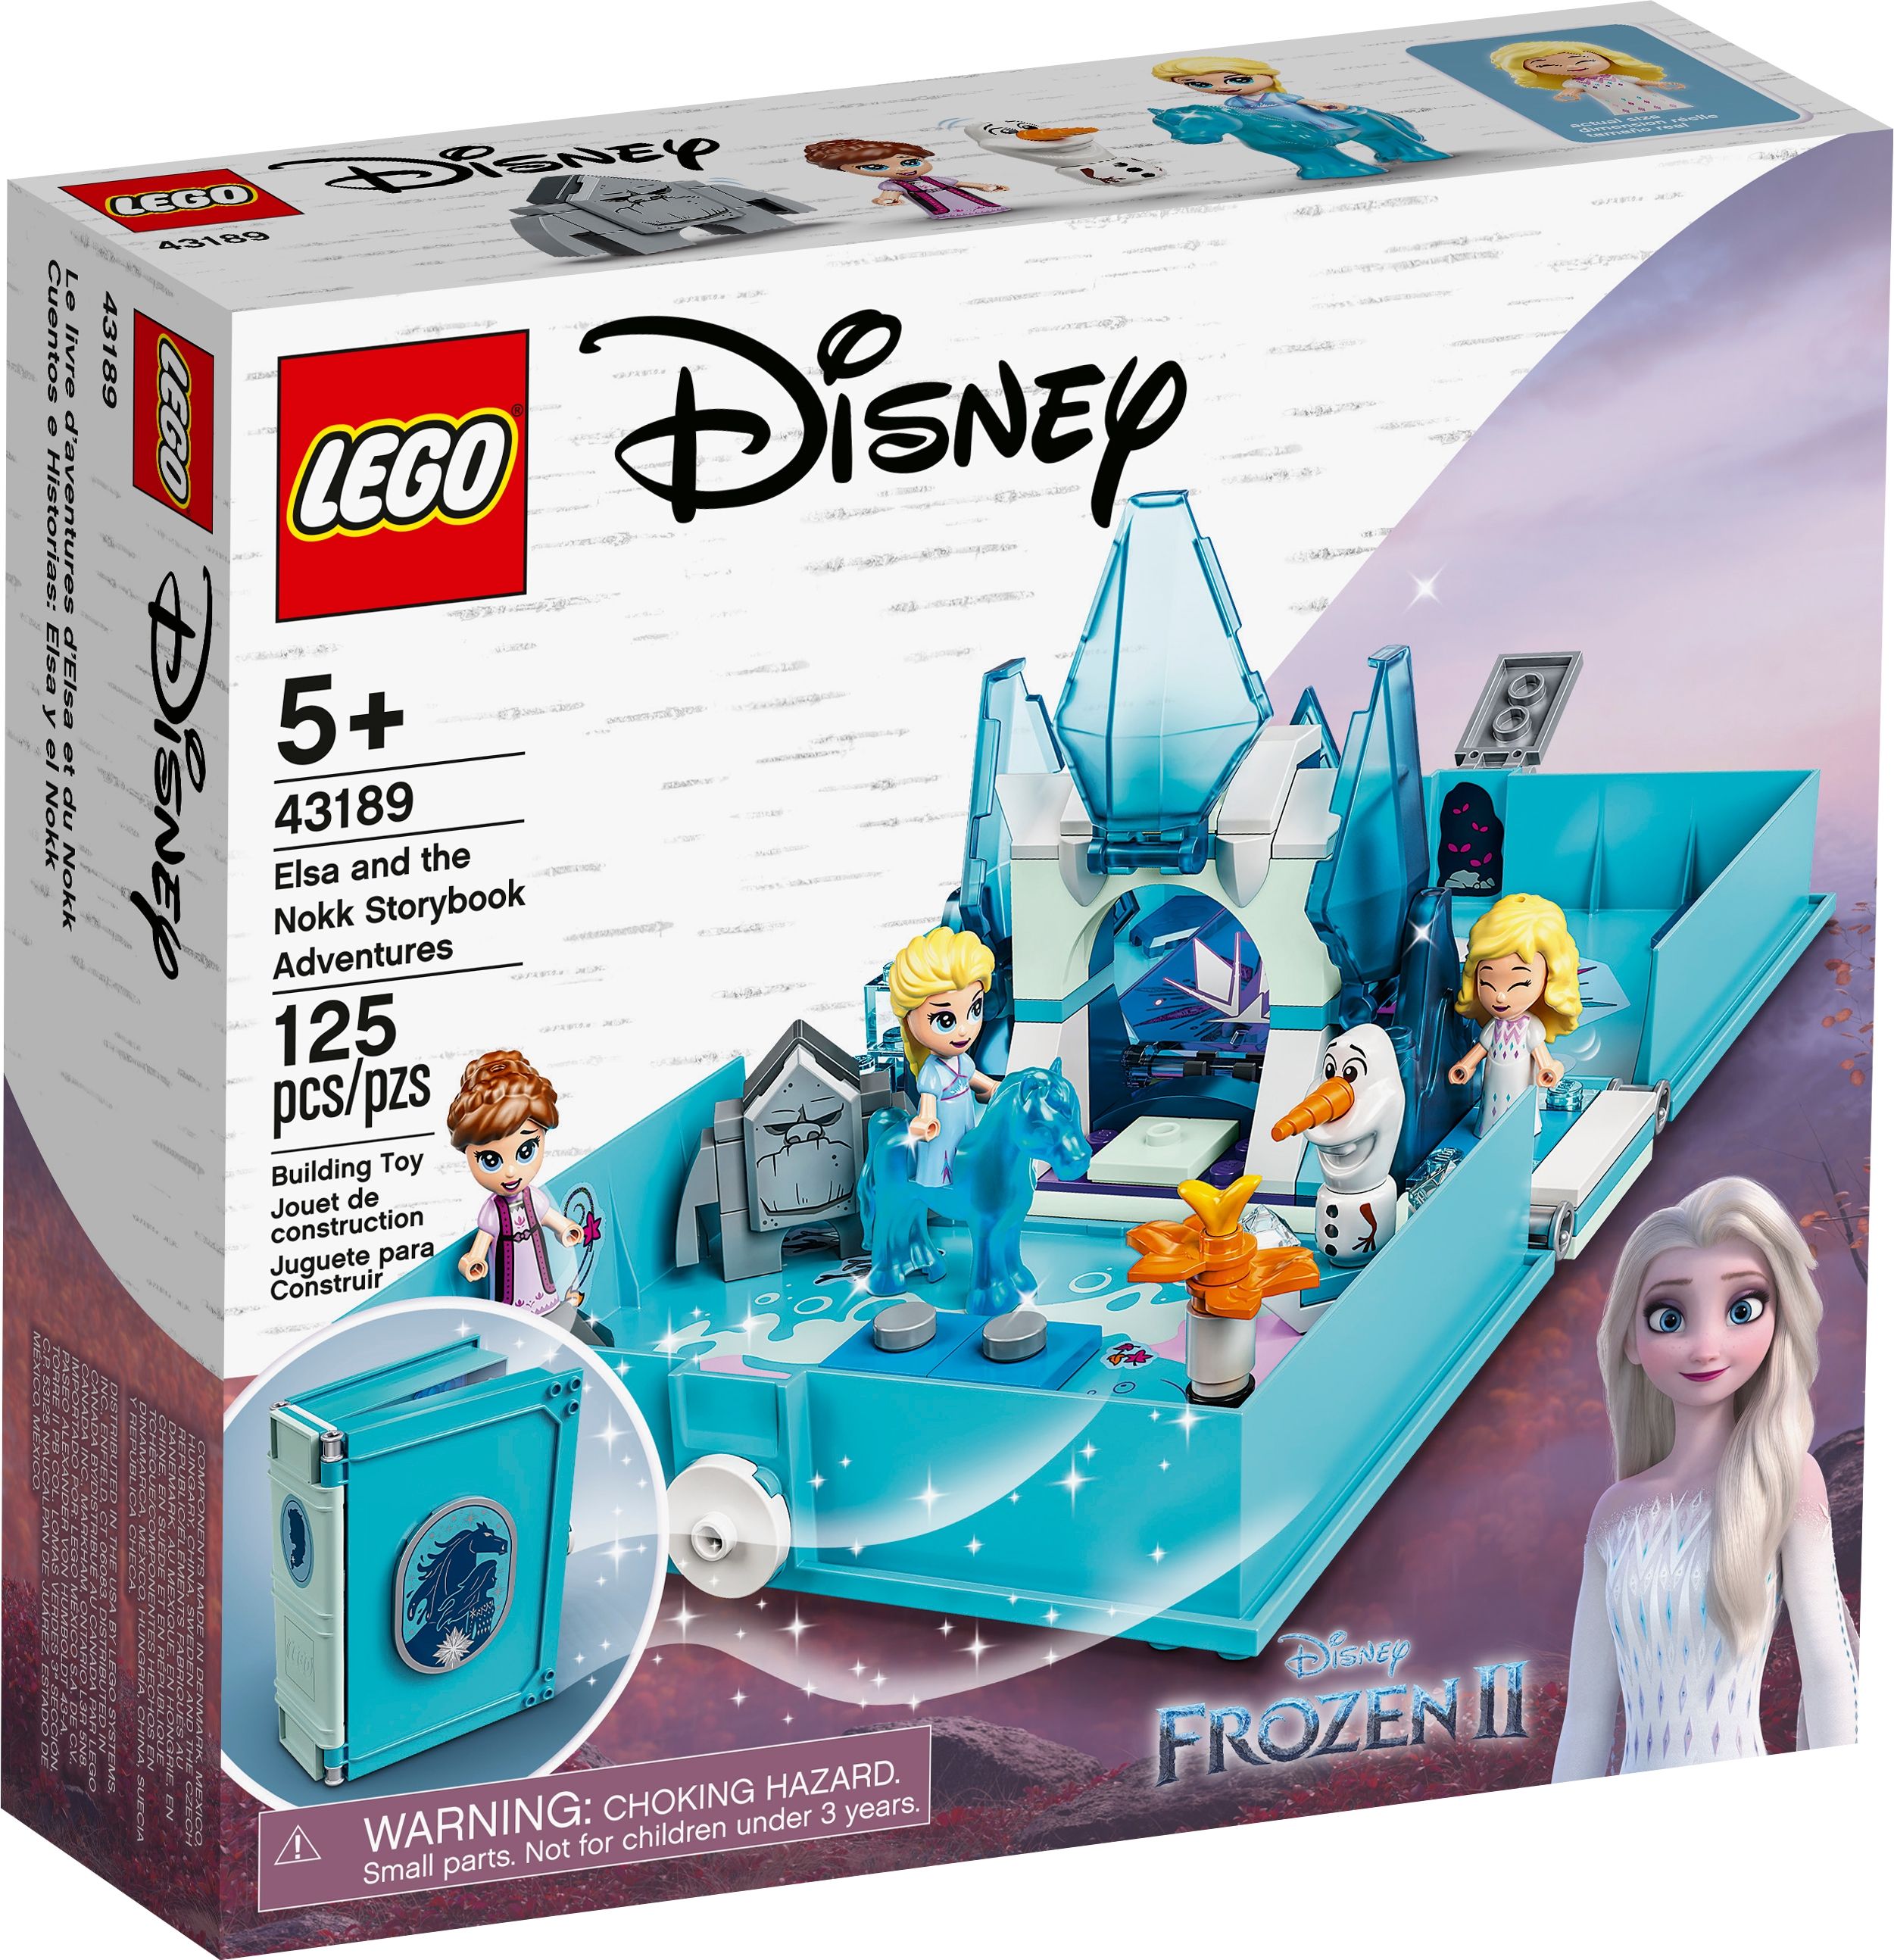 LEGO Disney 43189 Elsas Märchenbuch LEGO_43189_box1_v39.jpg